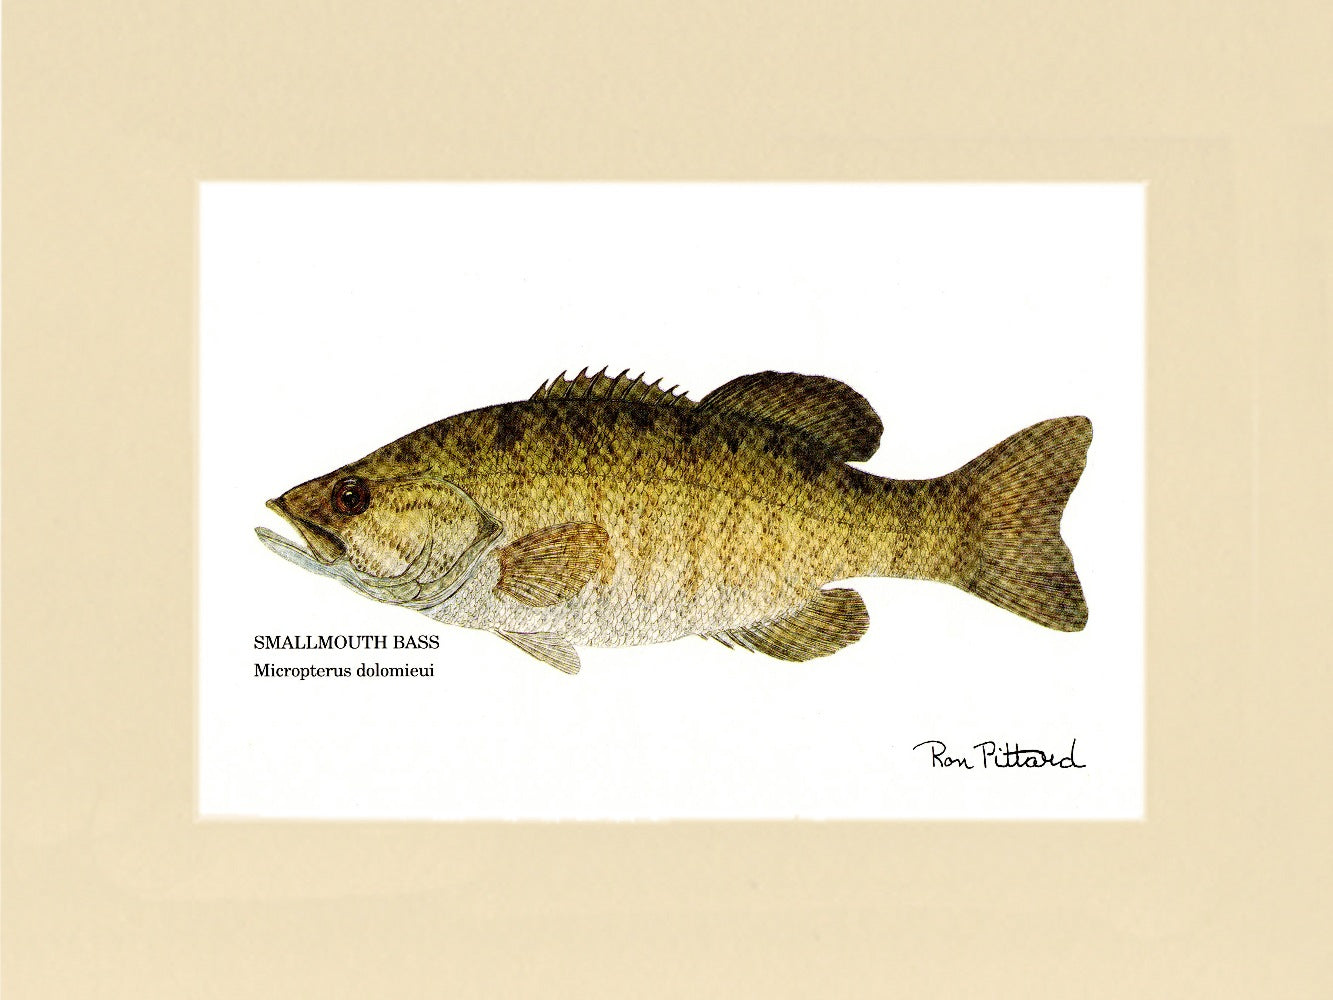 Bass Fishing Wall Art Print Gift. Largemouth Bass Fisherman Gift